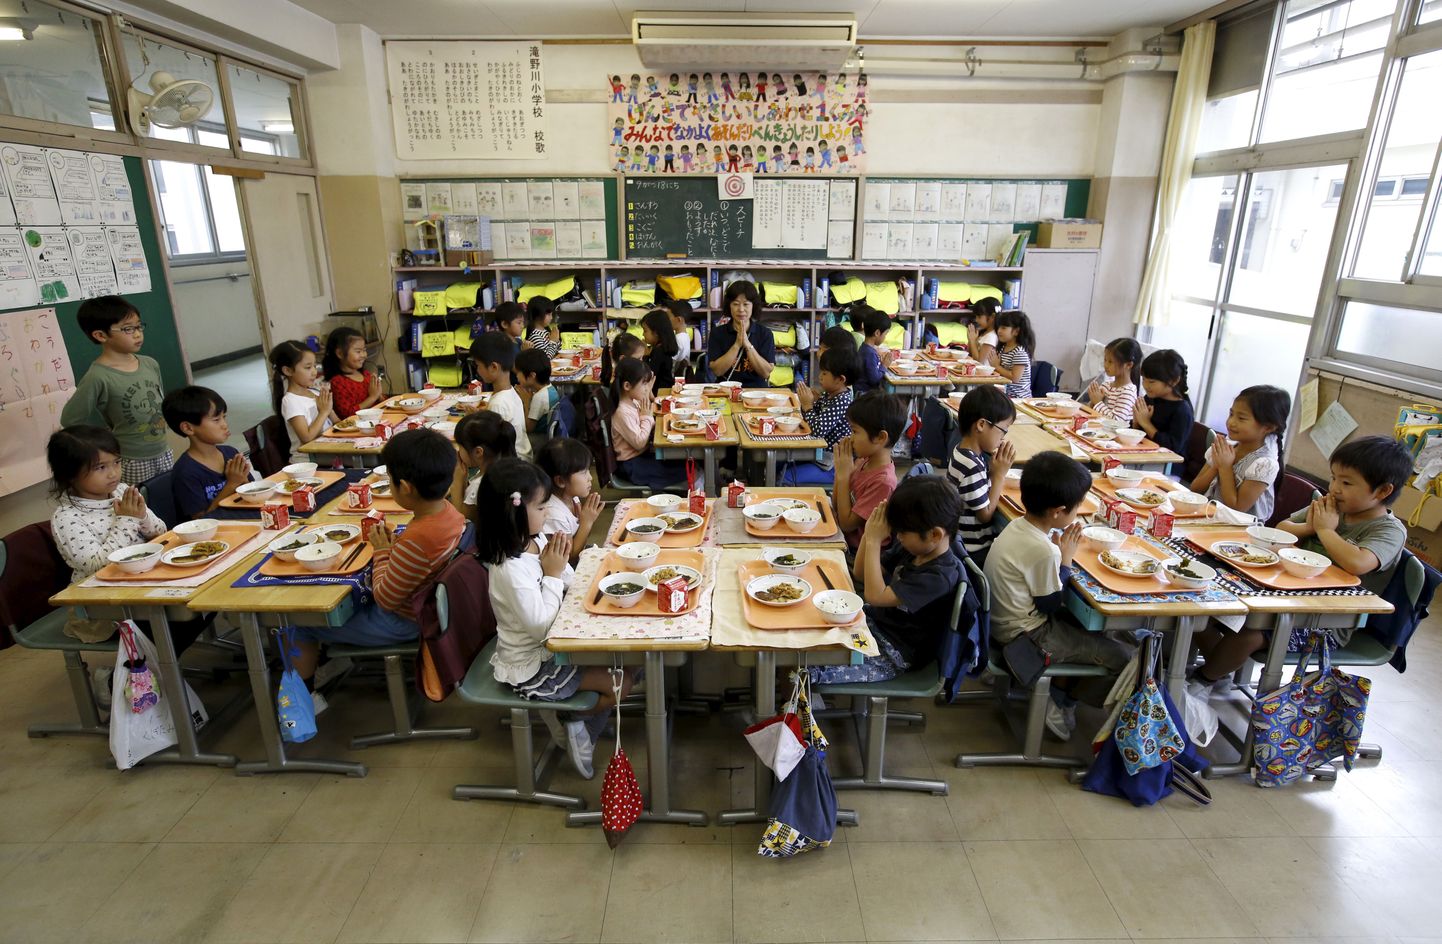 Takinogawa algkooli laste lõunasöök. Tokyo, Jaapan 2015.